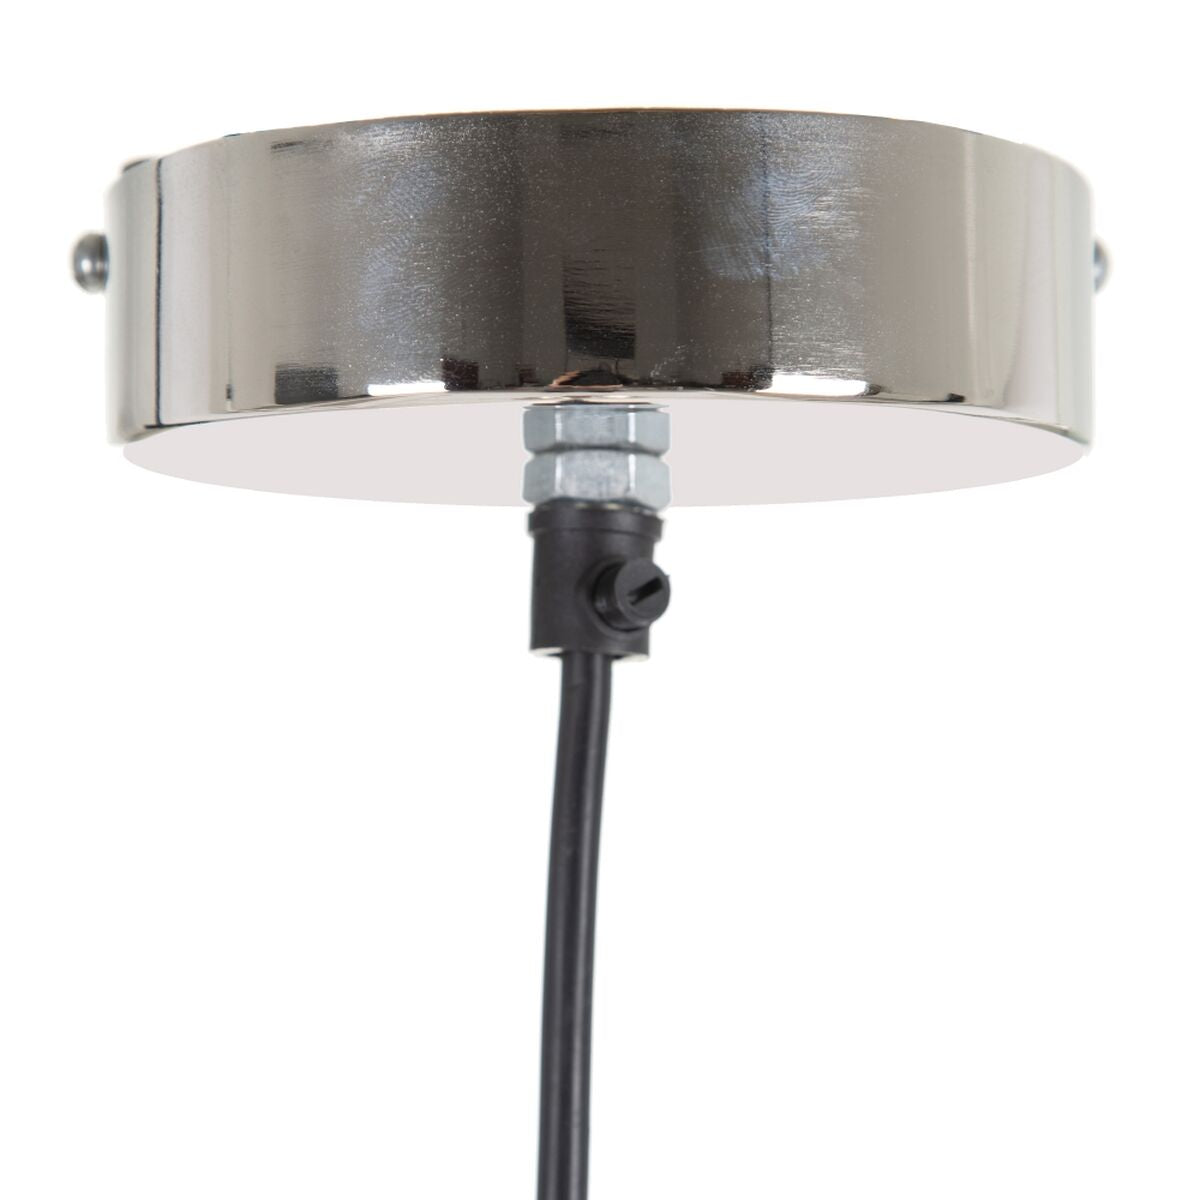 Ceiling Lamp 34 x 34 x 23 cm Silver Aluminum